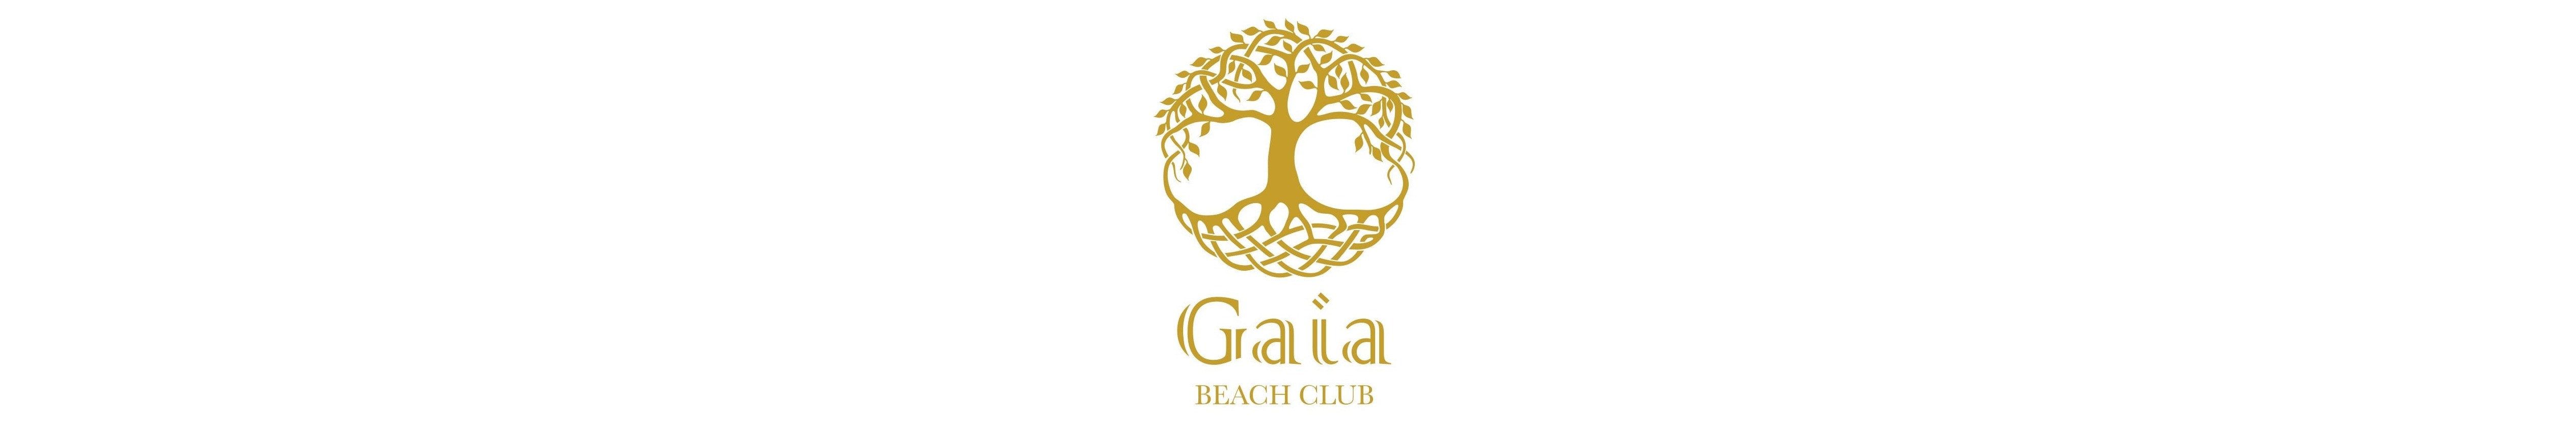 Gaia Beach Club Tarifa - Wedding Venue